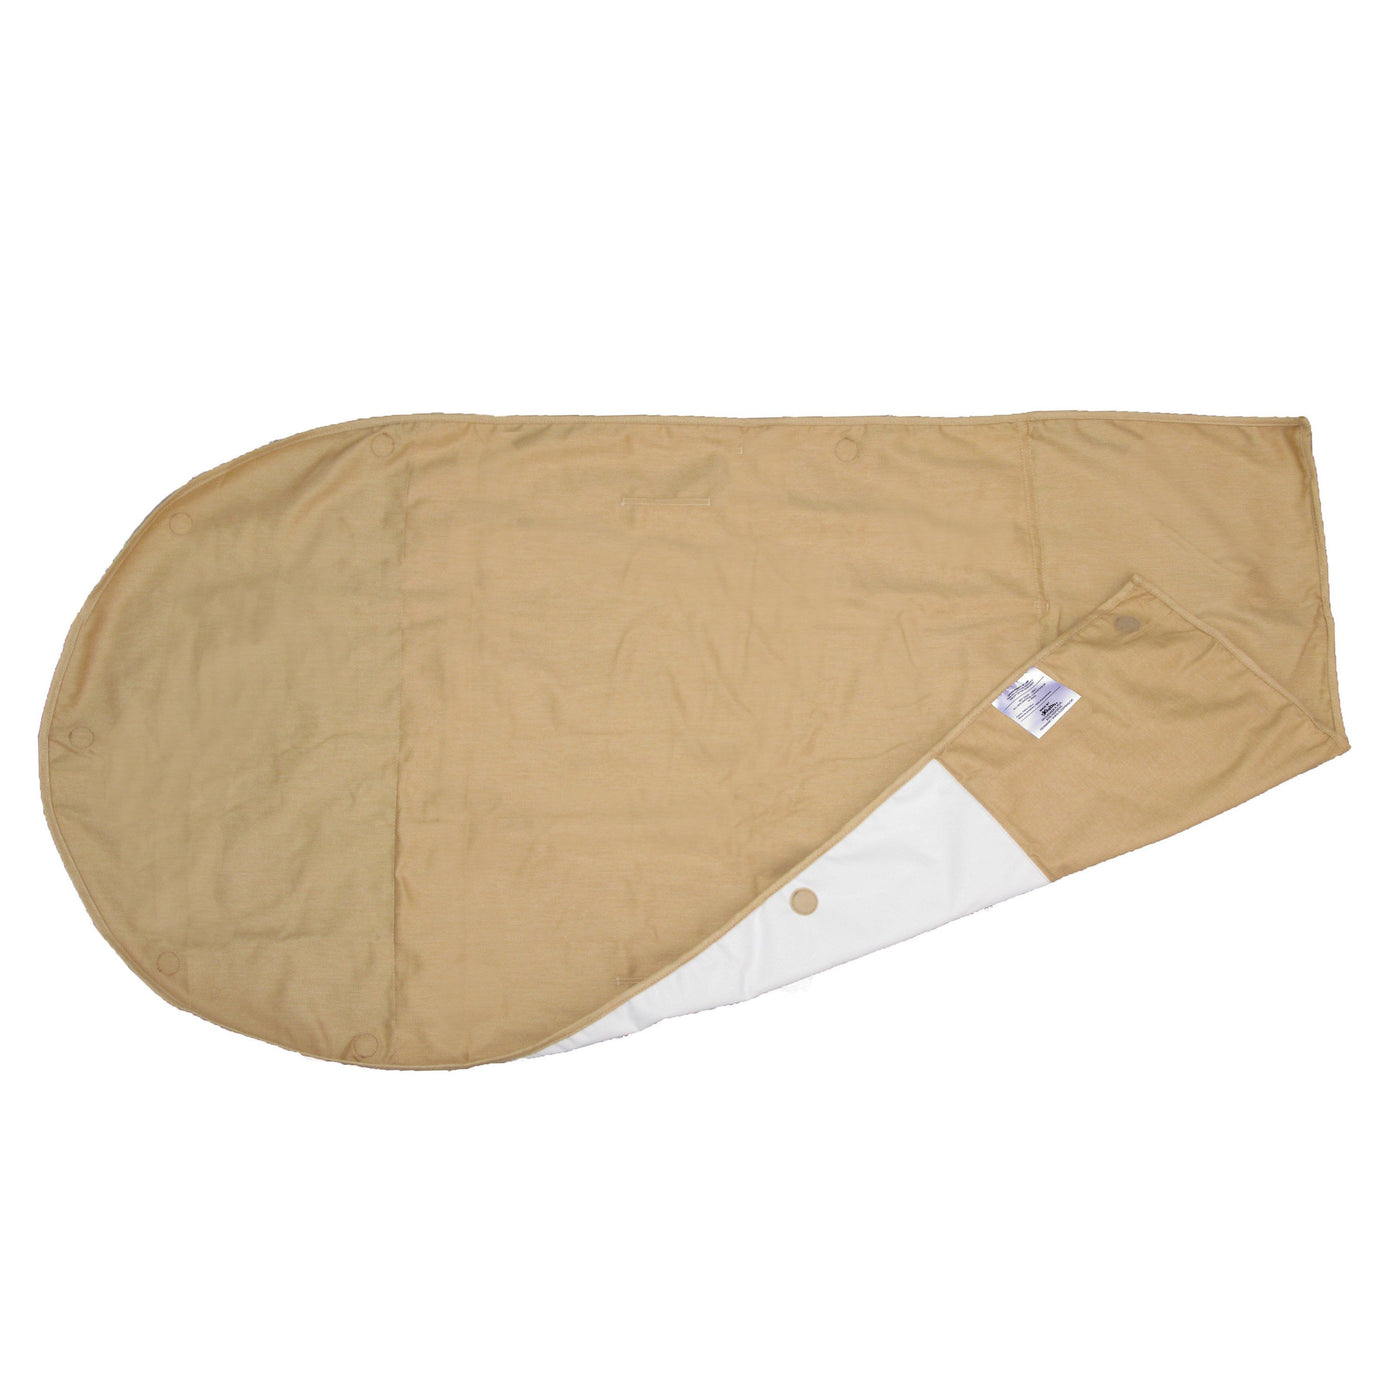 Sleepbag sovsäck våt lakan 1 st. mini